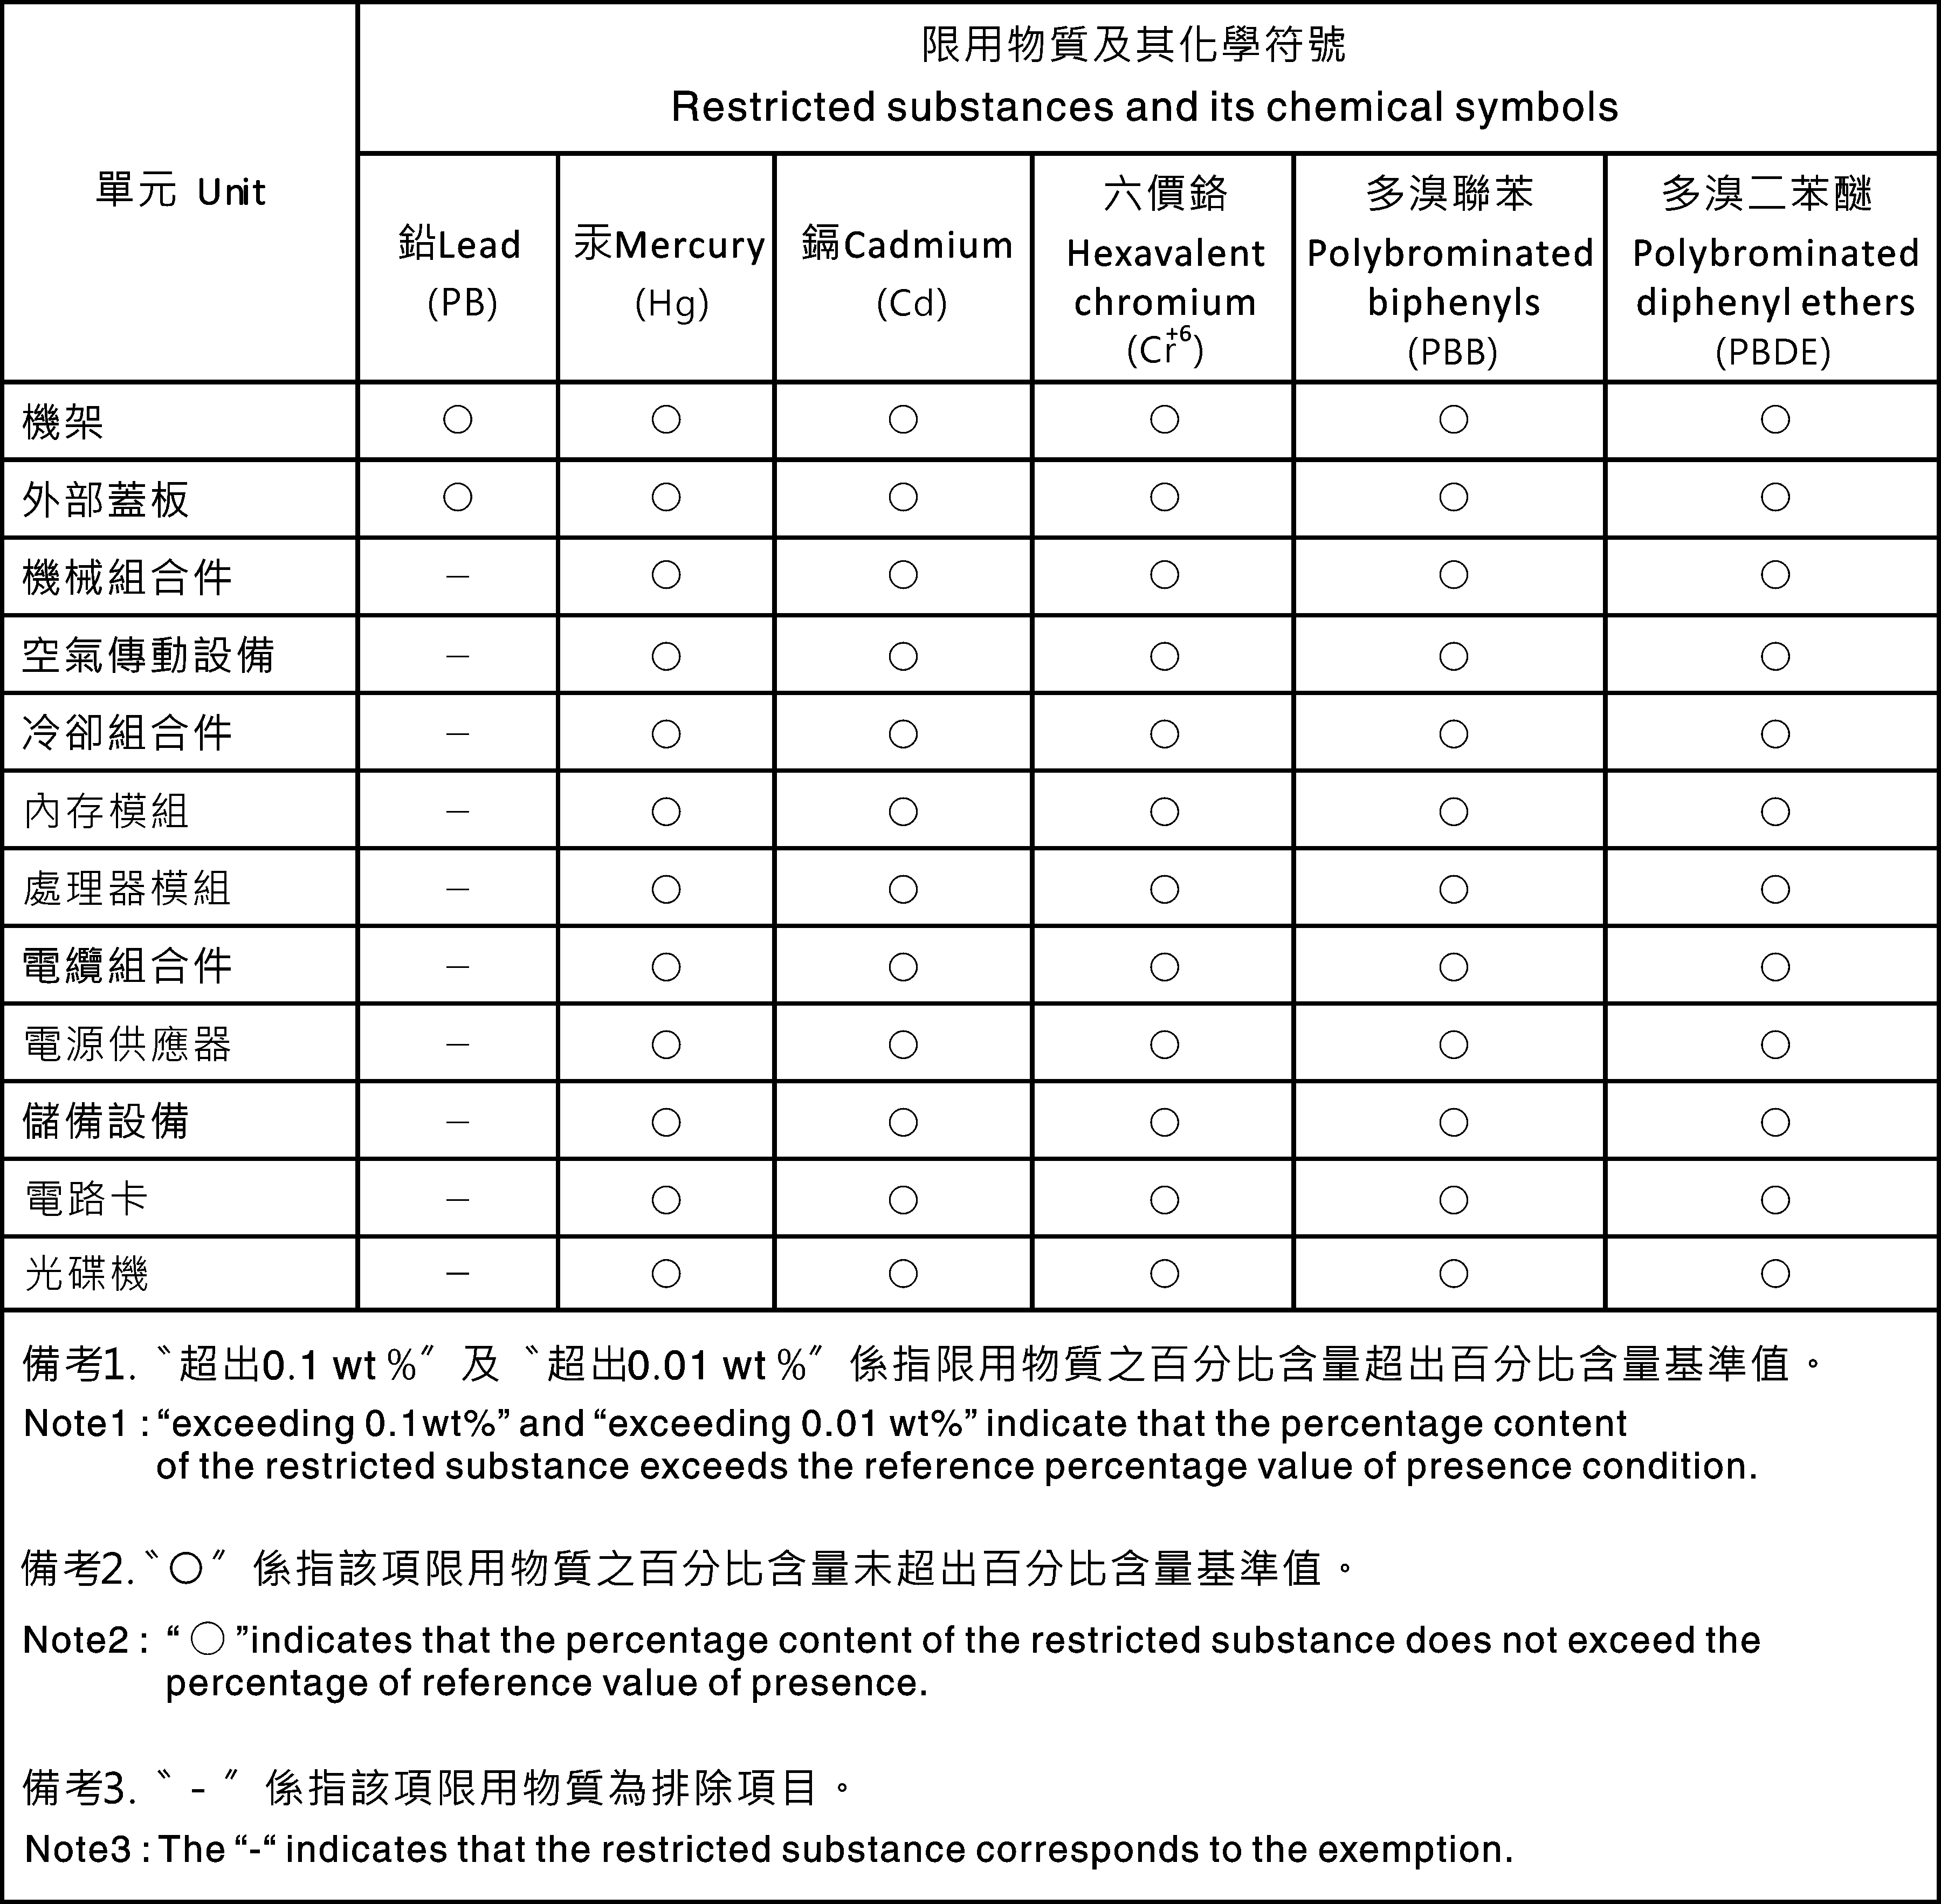 Avis de conformité pour la classe A à Taïwan